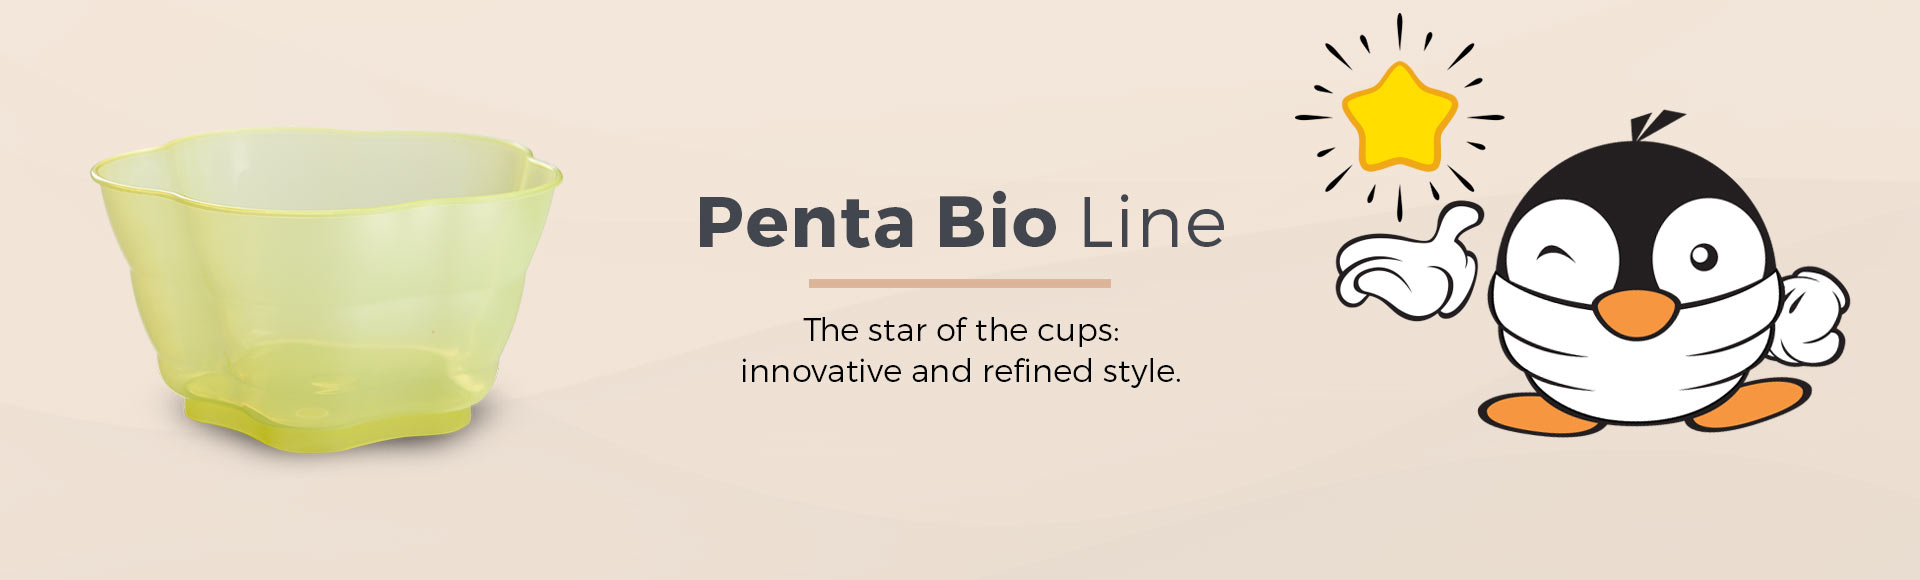 en-header-linea-bio-penta